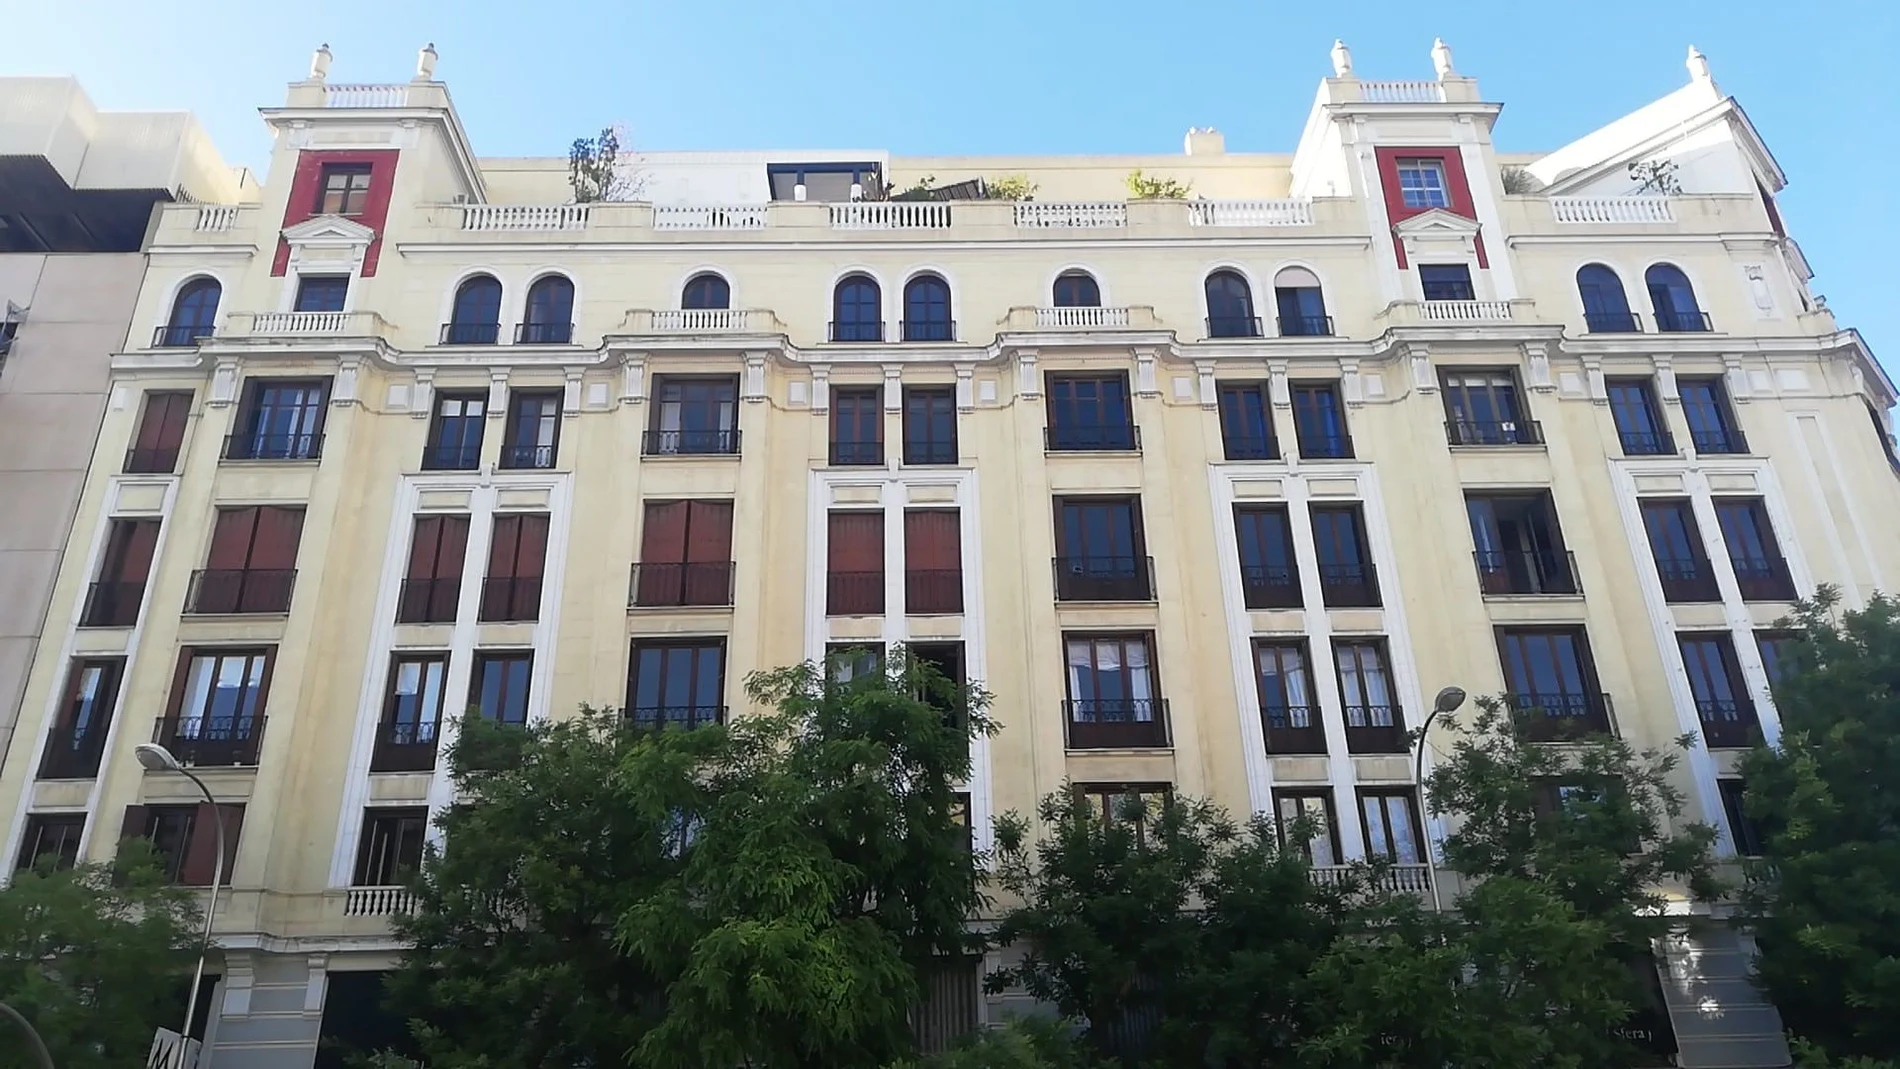 Futuro hotel en Goya con Conde Peñalver de El Corte Ingles